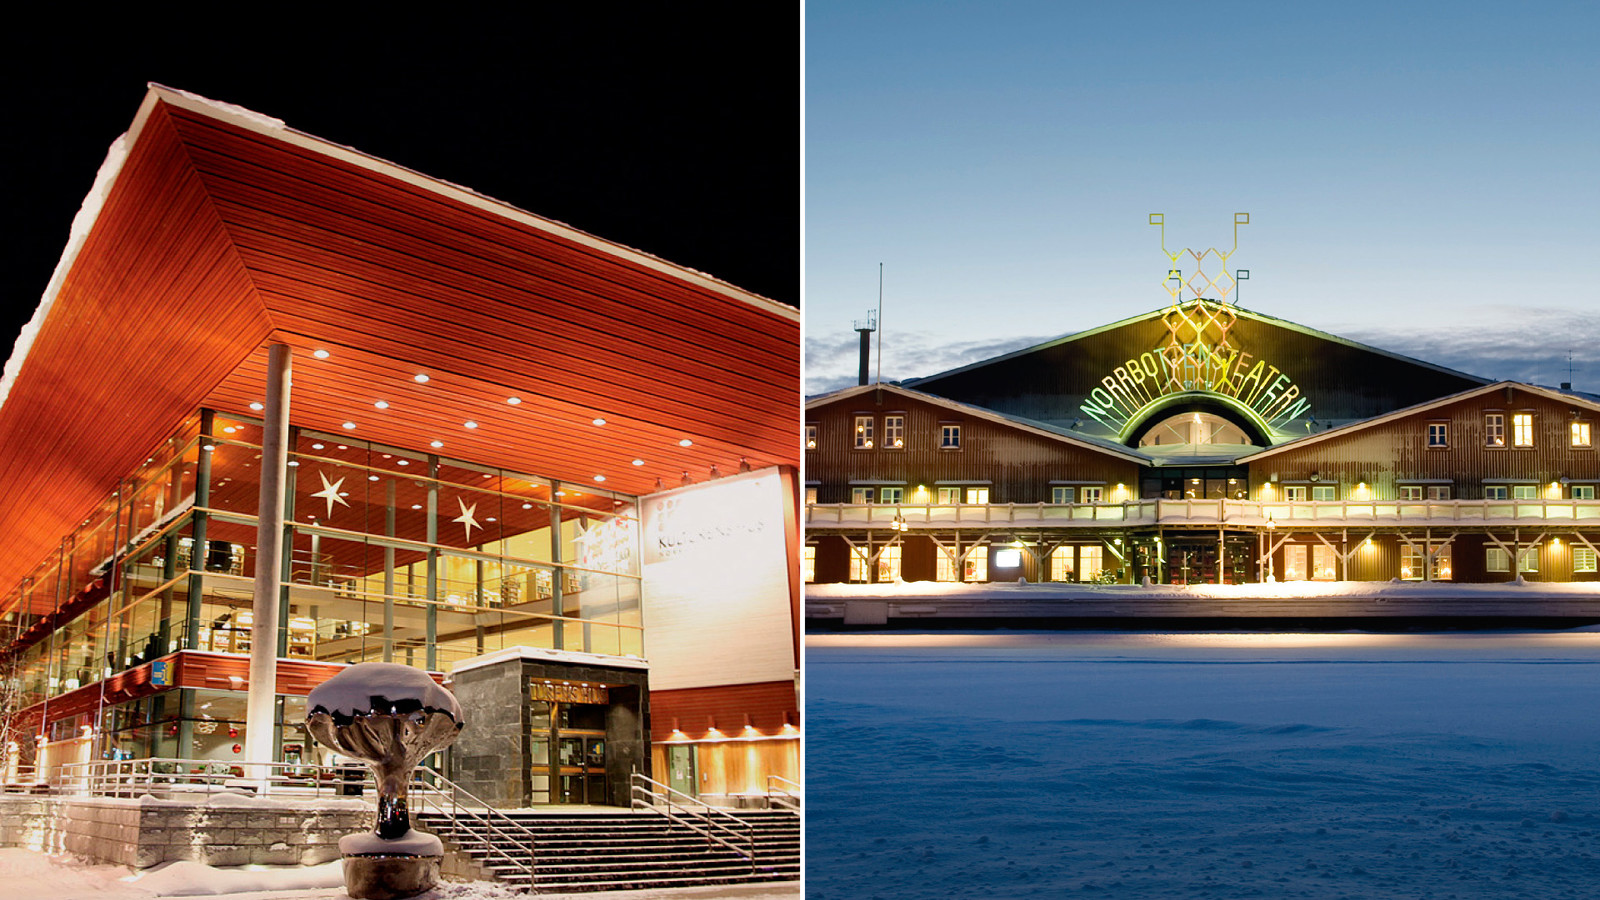 Två bilder i en. Vänster Kulturens hus i Luleå, stor byggnad med glasfönster och rött tak. Höger Norrbottens Teatern i Luleå, stor röd byggnad vid hamnen.